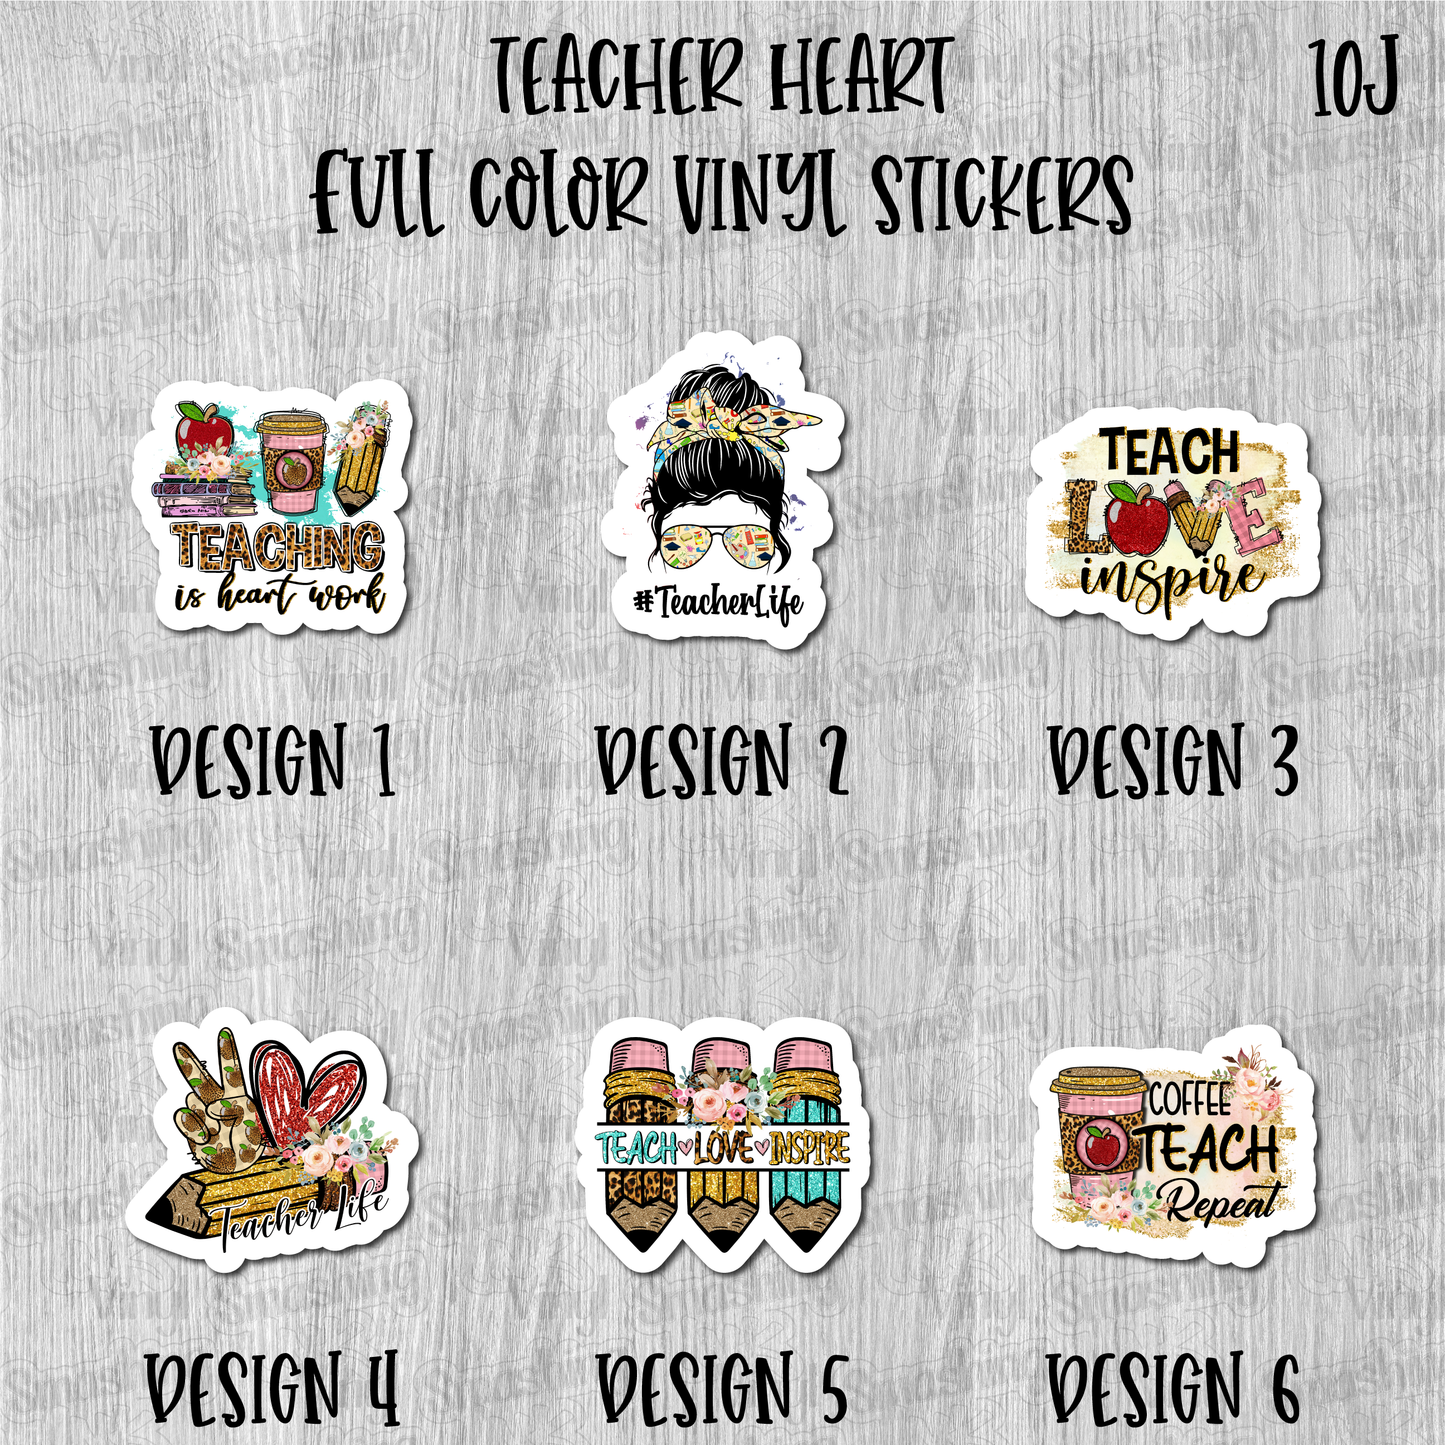 Teacher Heart - Full Color Vinyl Stickers (SHIPS IN 3-7 BUS DAYS)